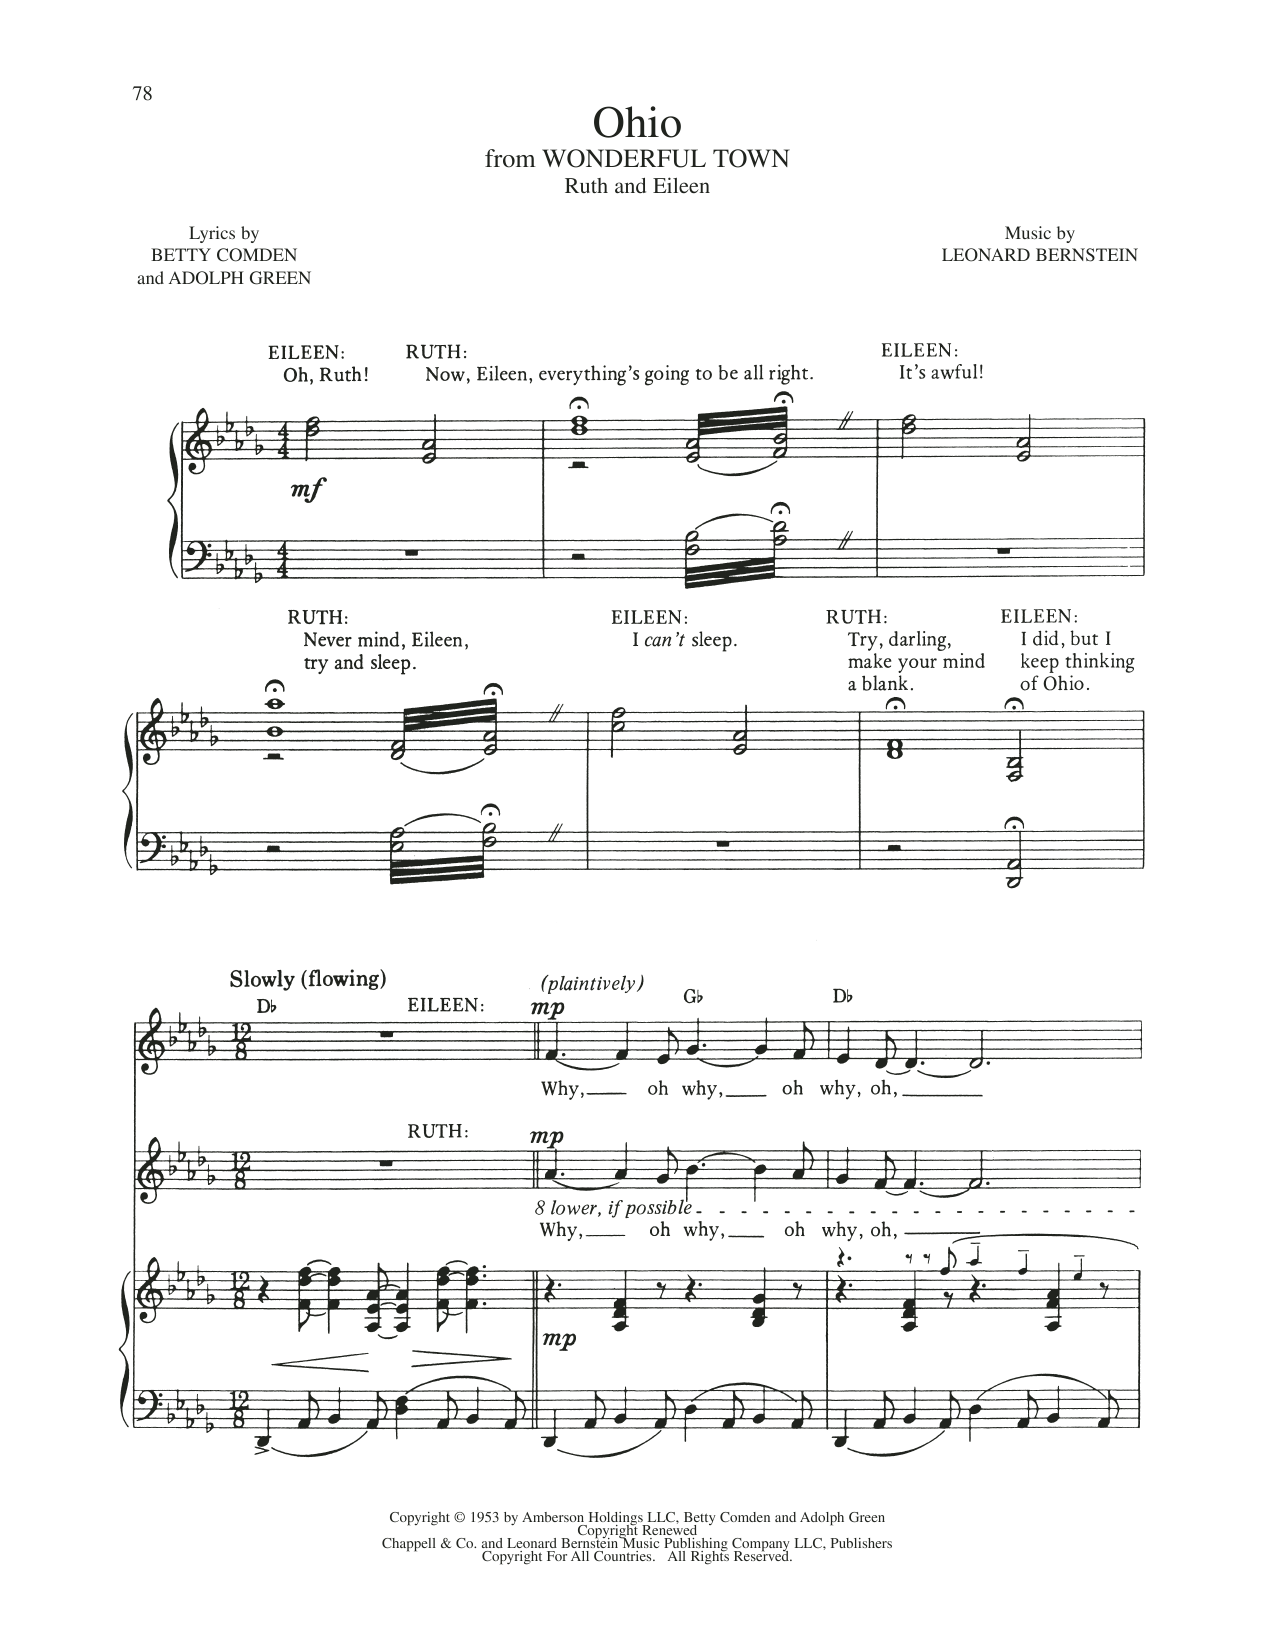 Download Leonard Bernstein Ohio (from Wonderful Town) Sheet Music